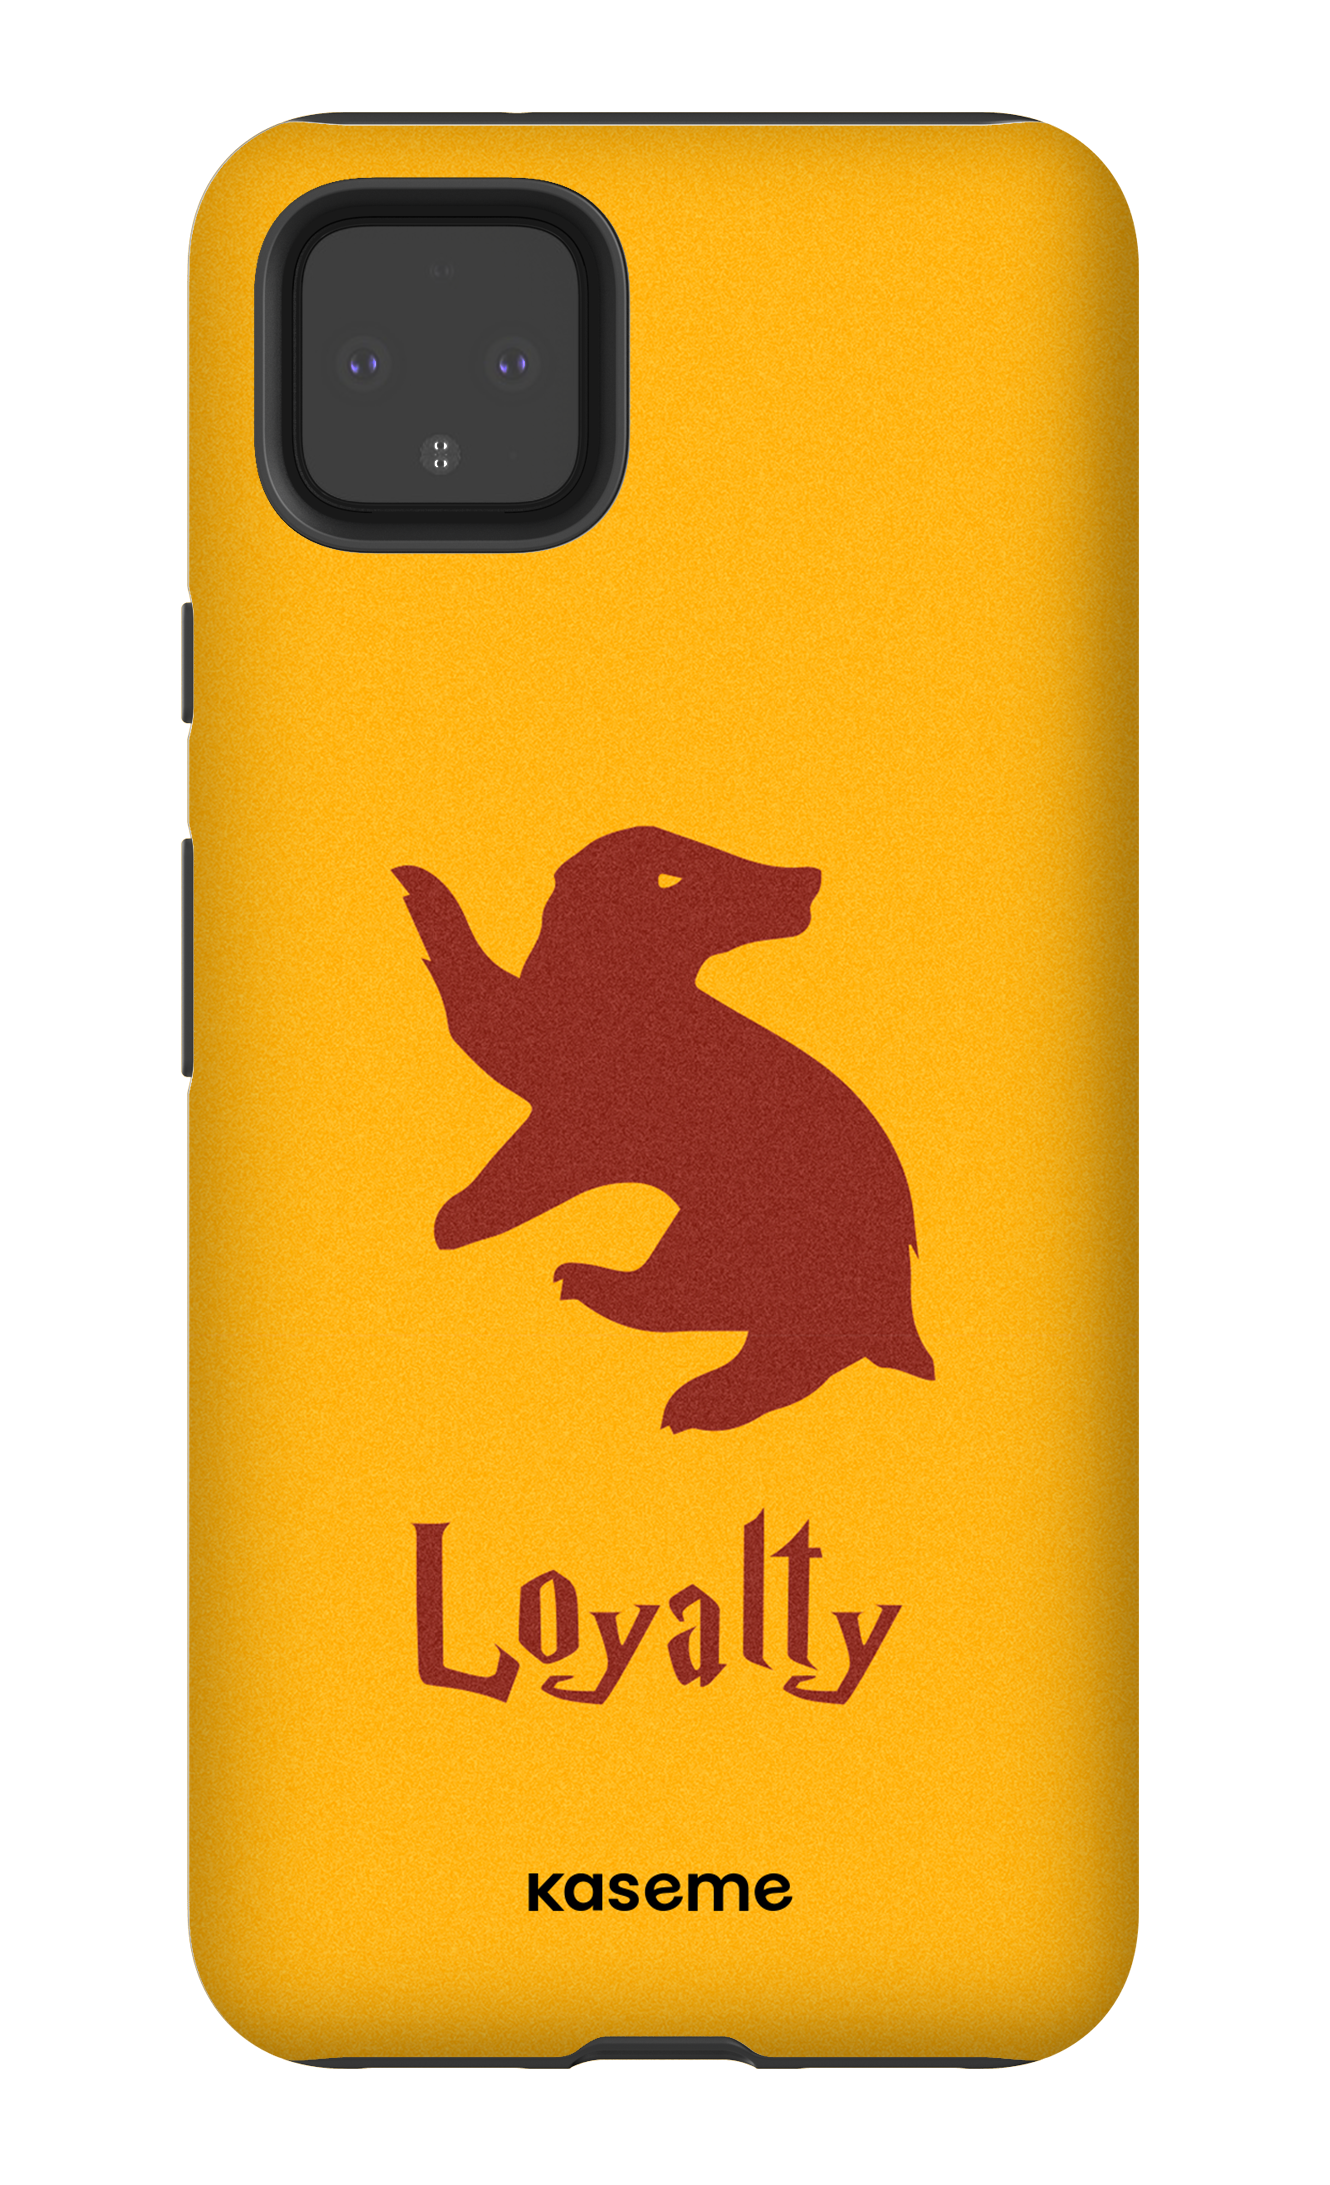 Loyalty - Google Pixel 4 XL